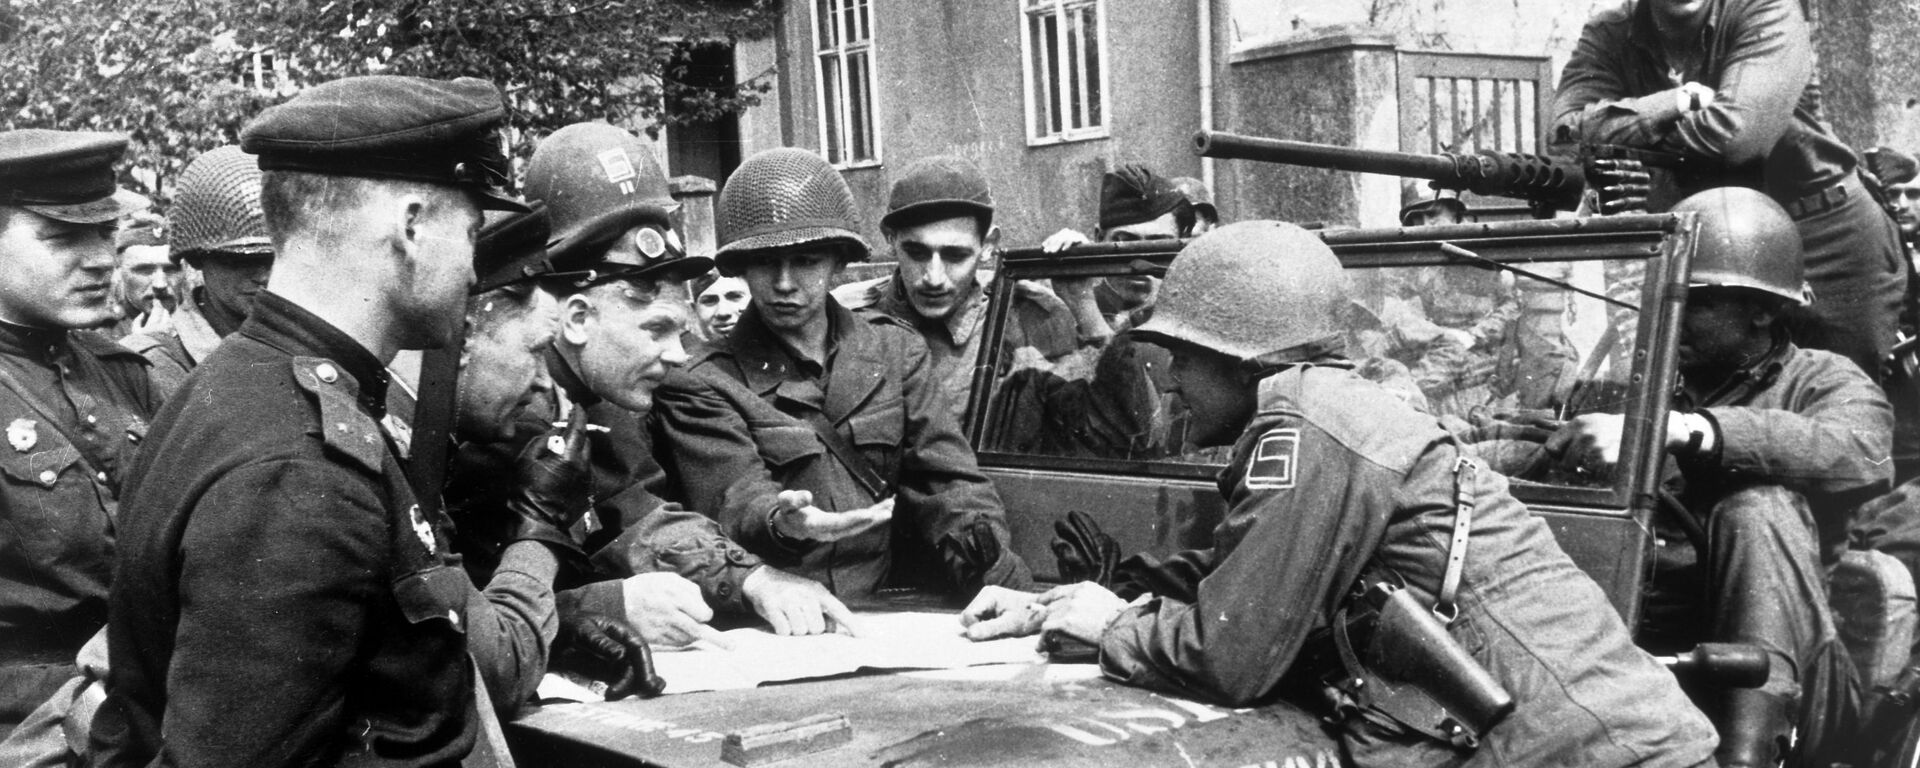 25 апреля 1945 года в районе Торгау на Эльбе войска 1-го Украинского фронта встретились с войсками 1-й армии США. - Sputnik Latvija, 1920, 04.04.2021